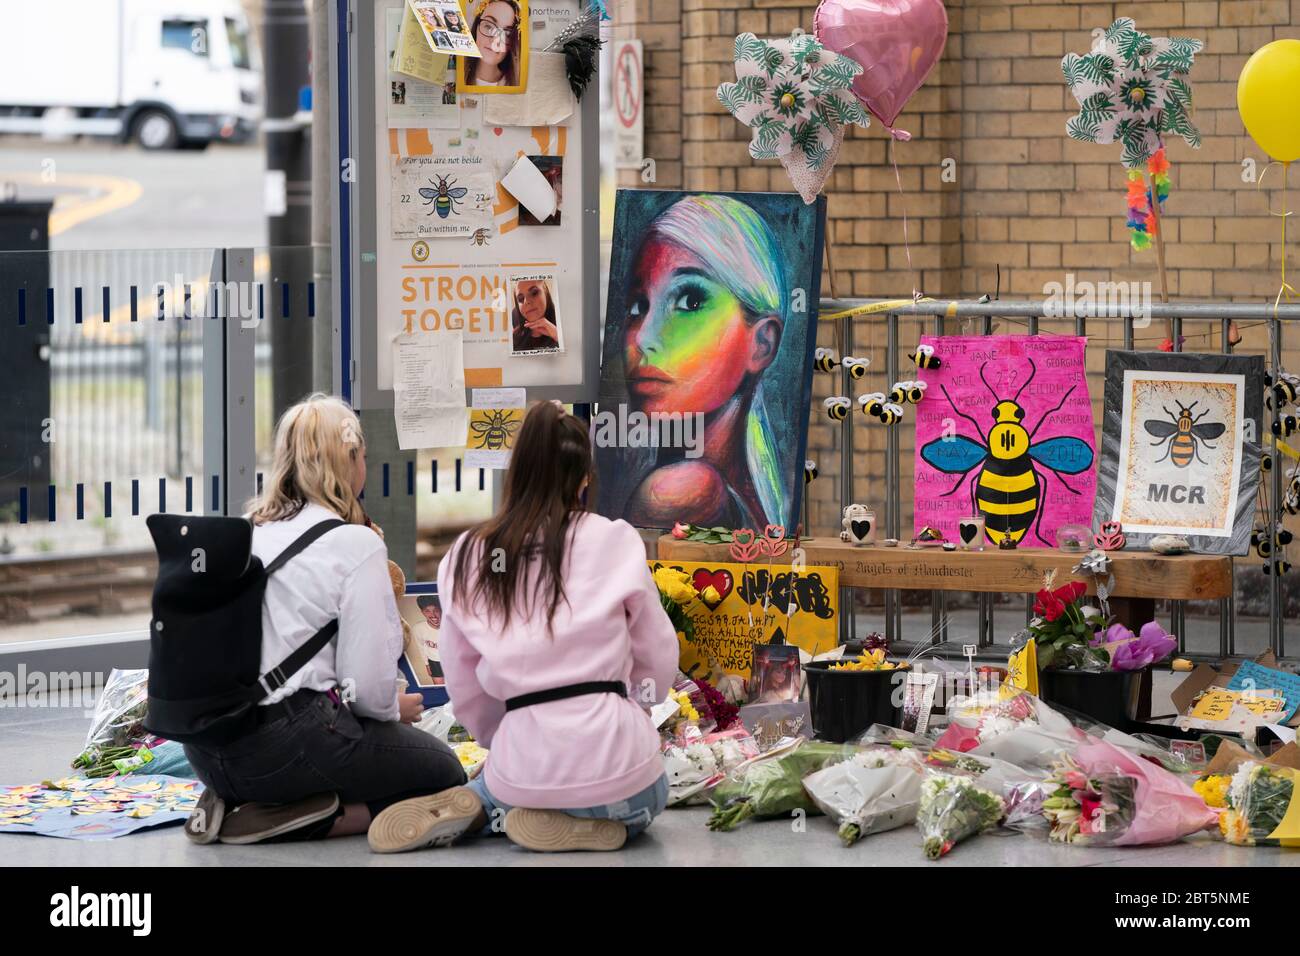 Manchester, Mai 22. Mai 2017. Die Menschen trauern bei einem Gedenkort des Angriffs auf die Manchester Arena in Manchester, Großbritannien, am 22. Mai 2020. Manchester am Freitag war der dritte Jahrestag des Terroranschlags, bei dem 22 Menschen getötet und Hunderte verletzt wurden. Der Angriff geschah, als Salman Abedi am Ende eines Konzerts der US-Popsängerin Ariana Grande am 22. Mai 2017 eine Bombe zündete. Kredit: Jon Super/Xinhua/Alamy Live News Stockfoto